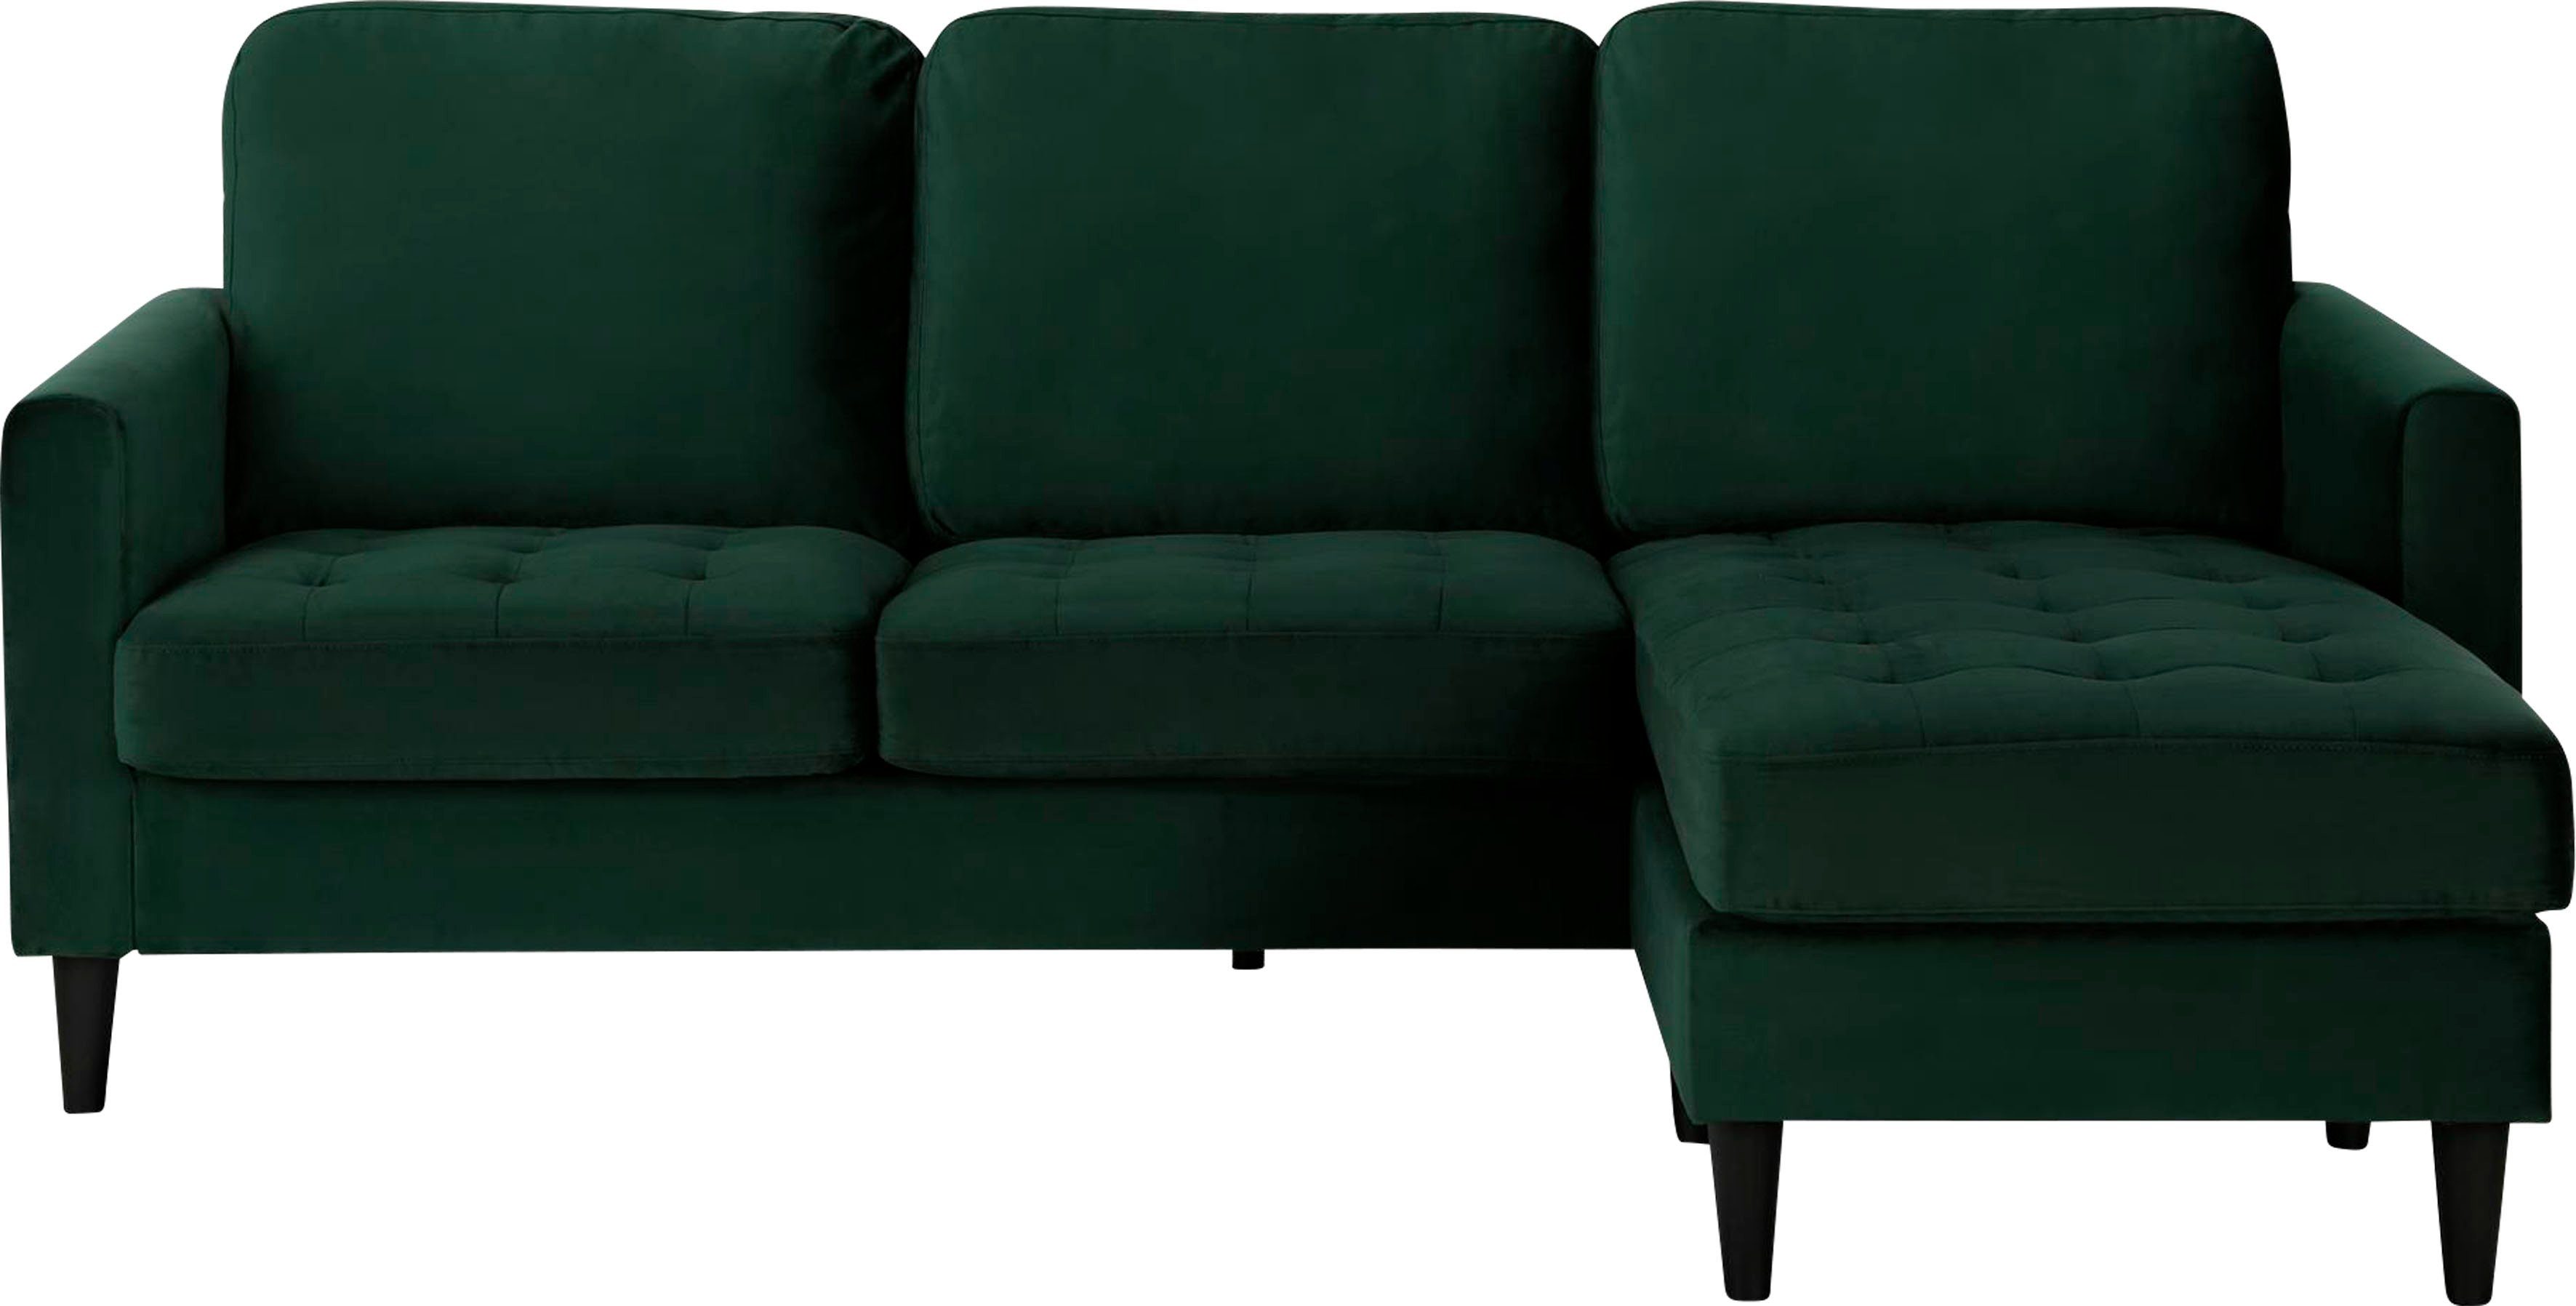 CosmoLiving by Cosmopolitan Ecksofa Strummer, 1 Teile, in Veloursstoff, mane beidseitig montierbar, Sitzhöhe 46 cm grün/schwarz | grün | grün